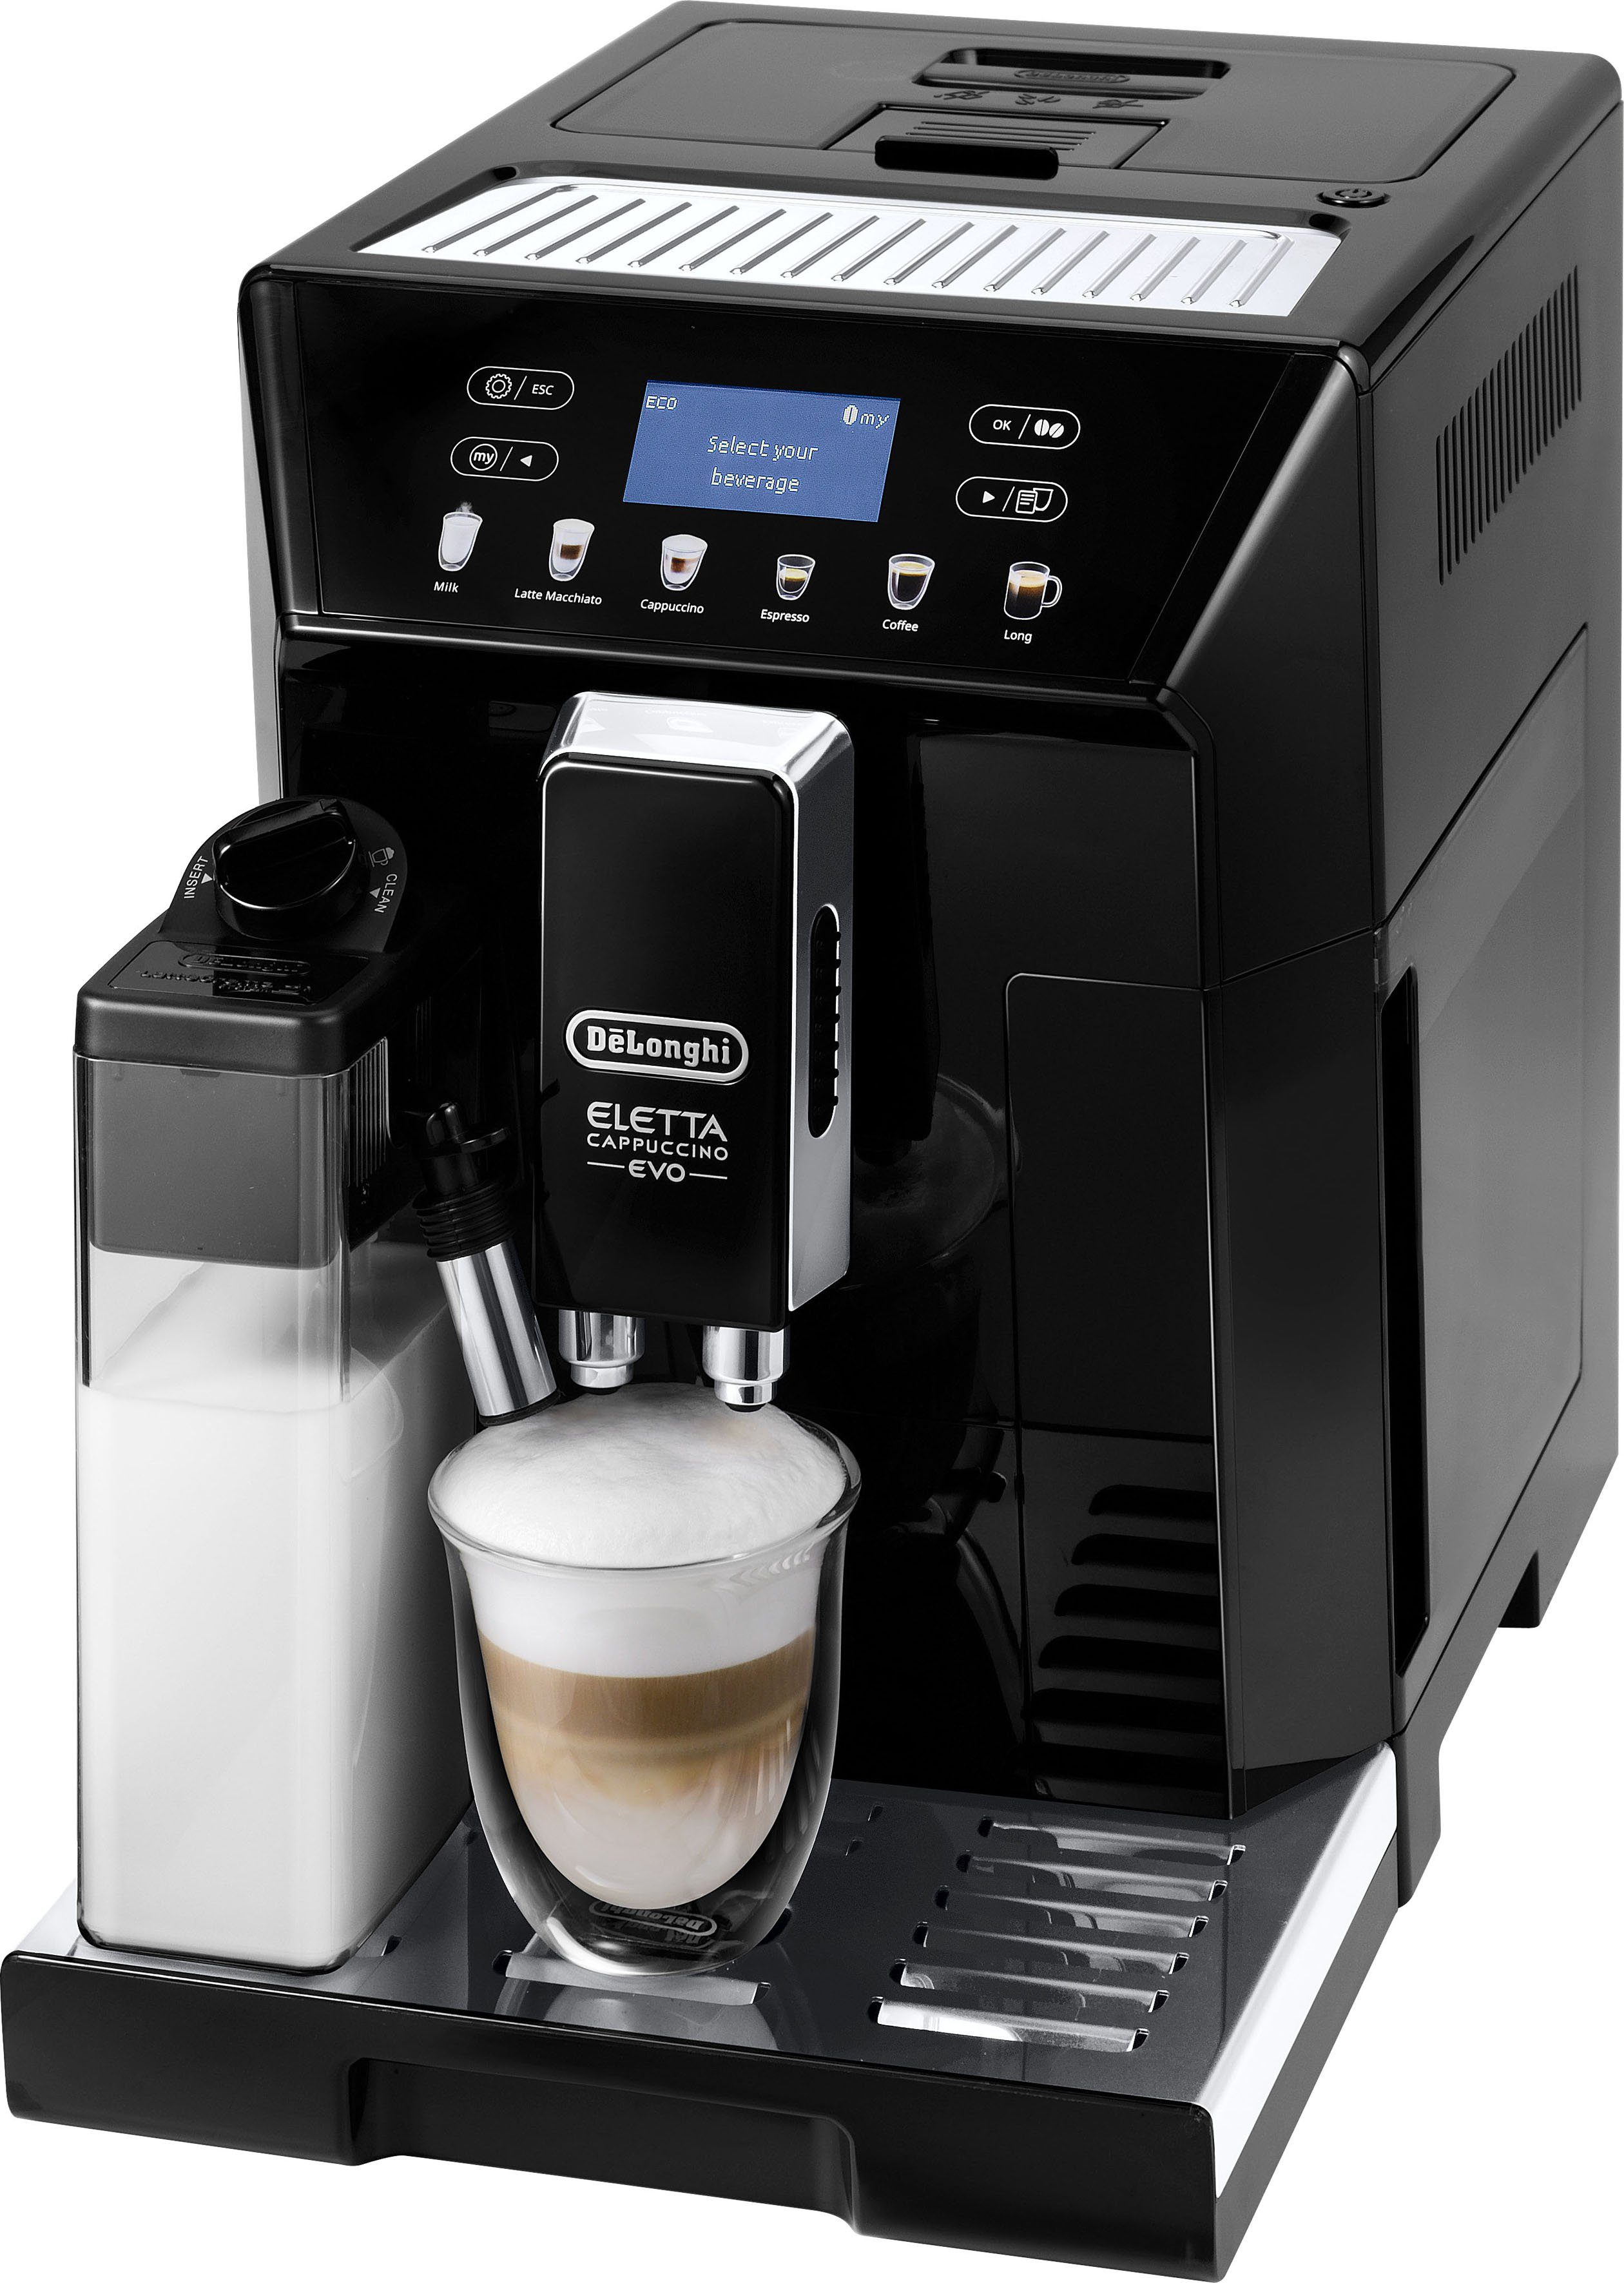 Günstige Kaffeevollautomaten online kaufen » Reduziert im SALE | OTTO